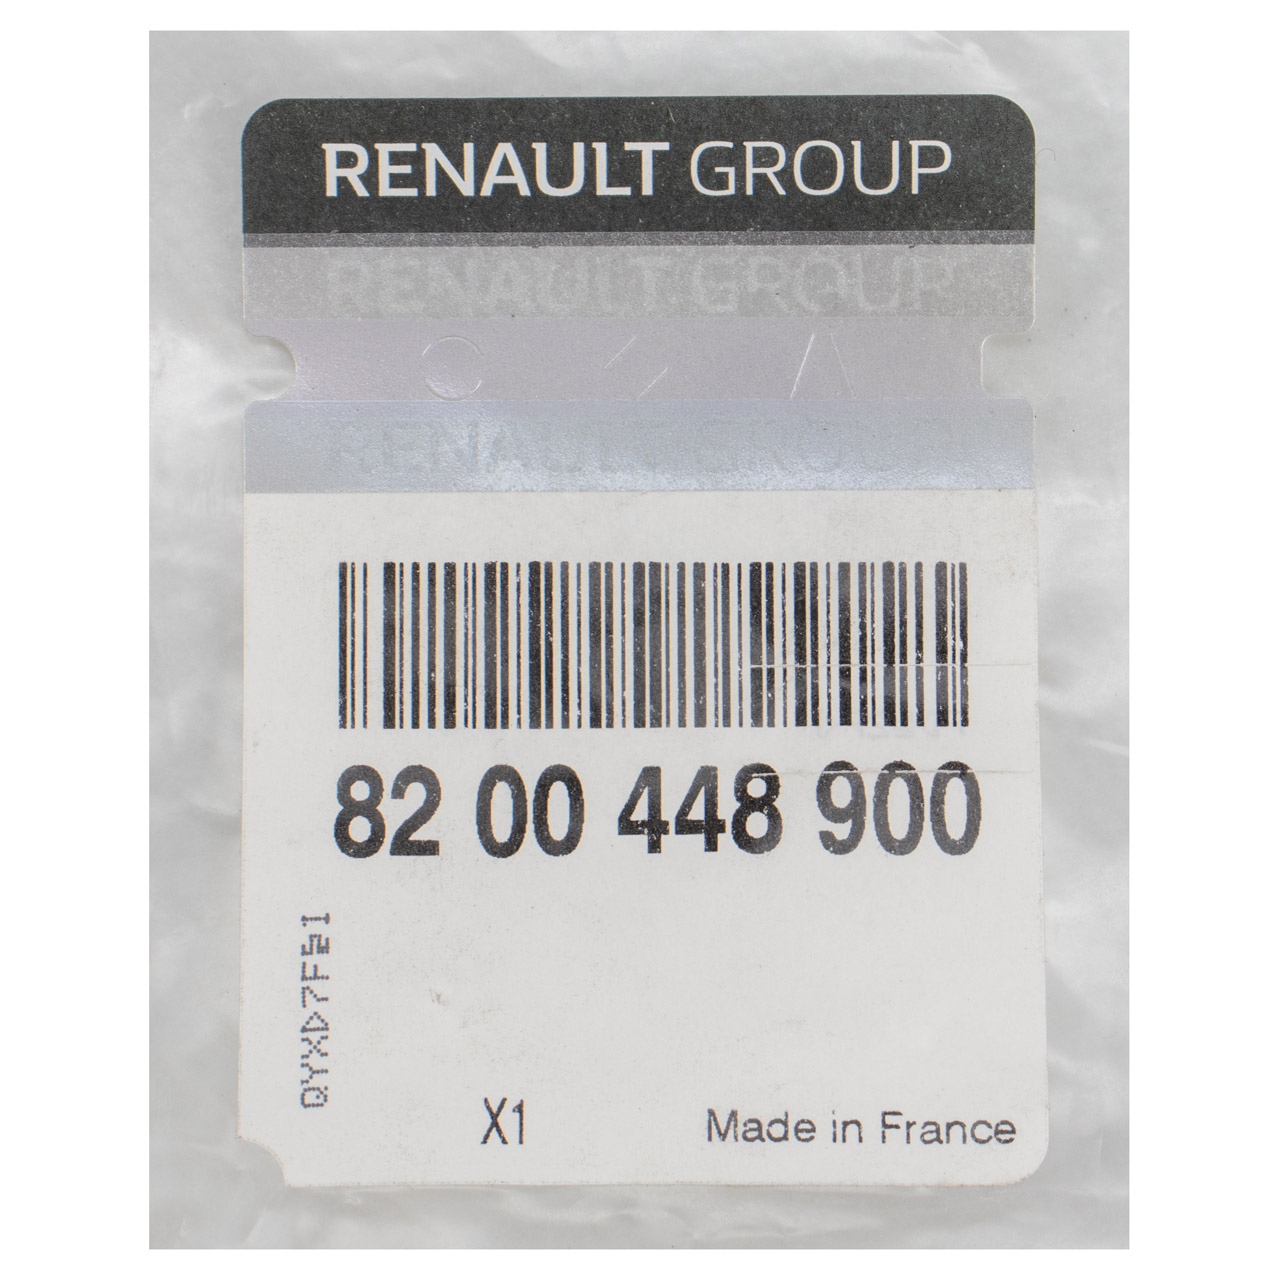 ORIGINAL Renault Gurtschloss Sicherheitsgurt Kangoo 2 hinten rechts 8200448900